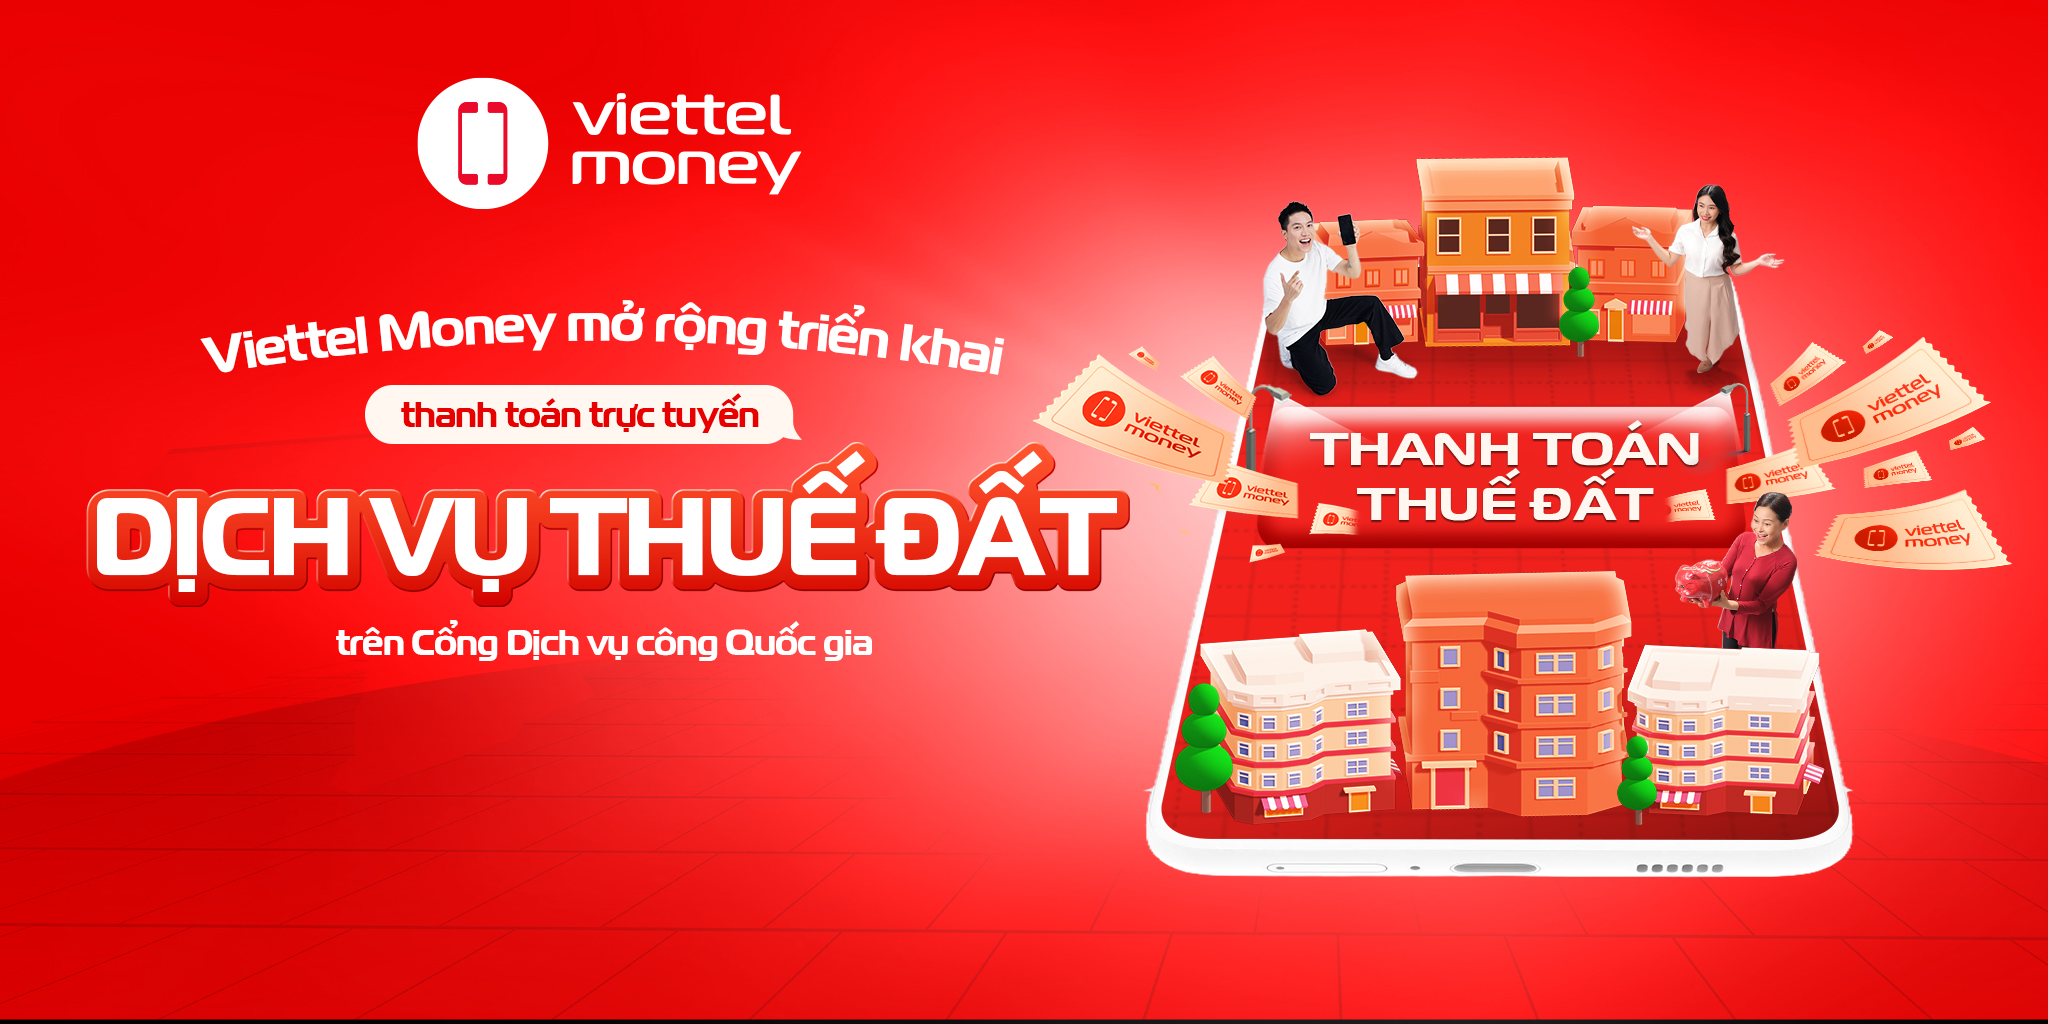 Viettel Money mở rộng triển khai thanh toán trực tuyến dịch vụ thuế đất trên Cổng Dịch vụ công Quốc gia